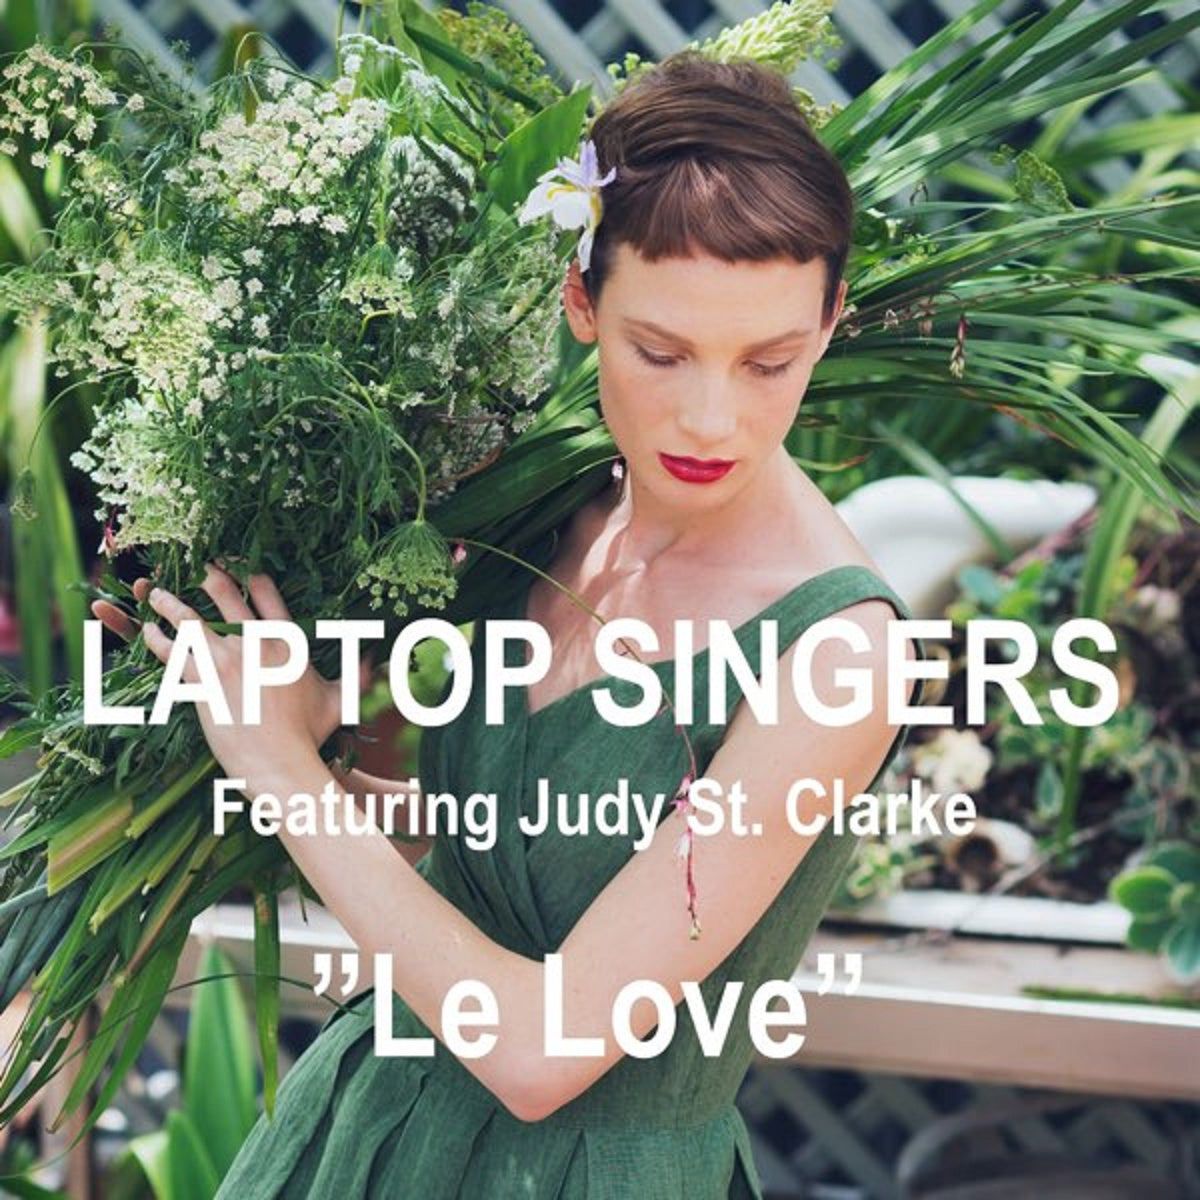 Laptop Singers - 'Le Love'